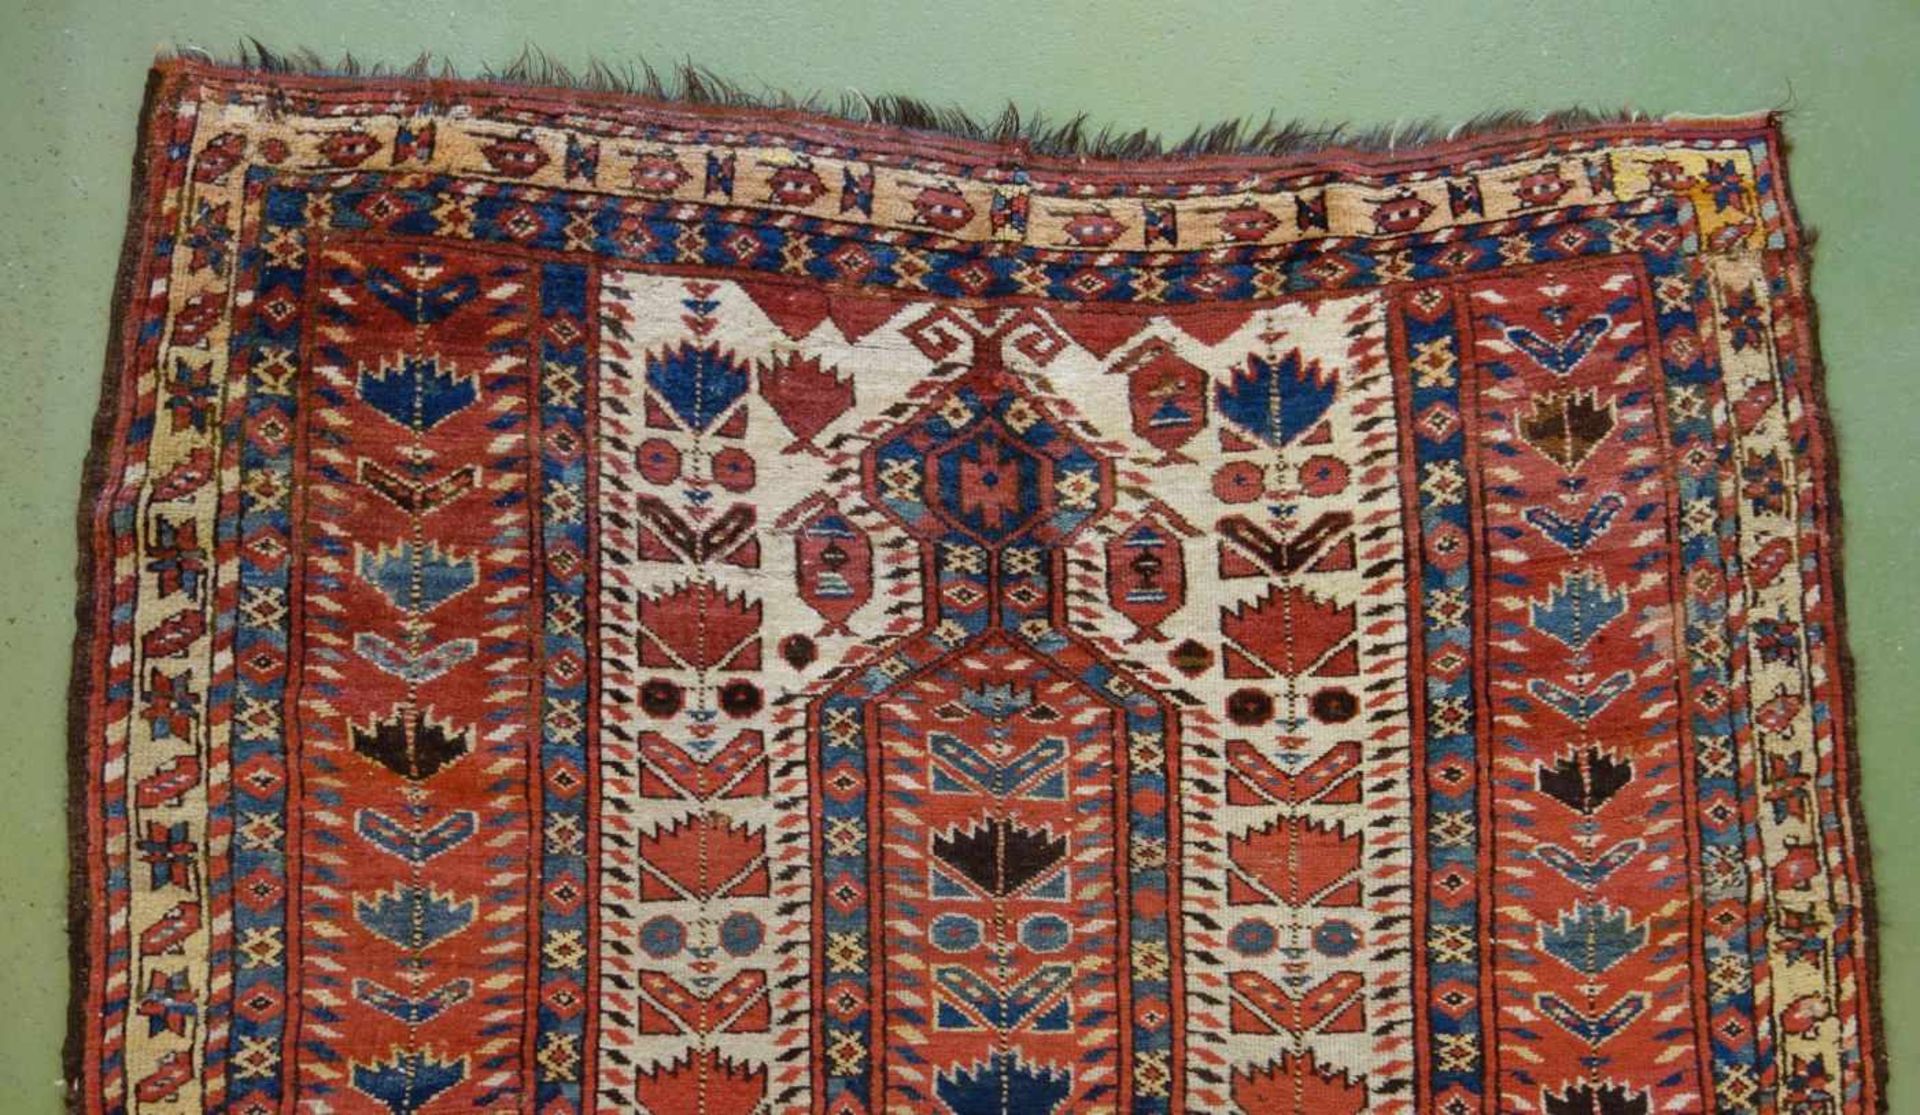 SCHMALER BESCHIR GEBETSTEPPICH / prayer rug, wohl 2. H. 19. Jh., Turkmenistan / Ersari-Beschir ( - Image 24 of 24